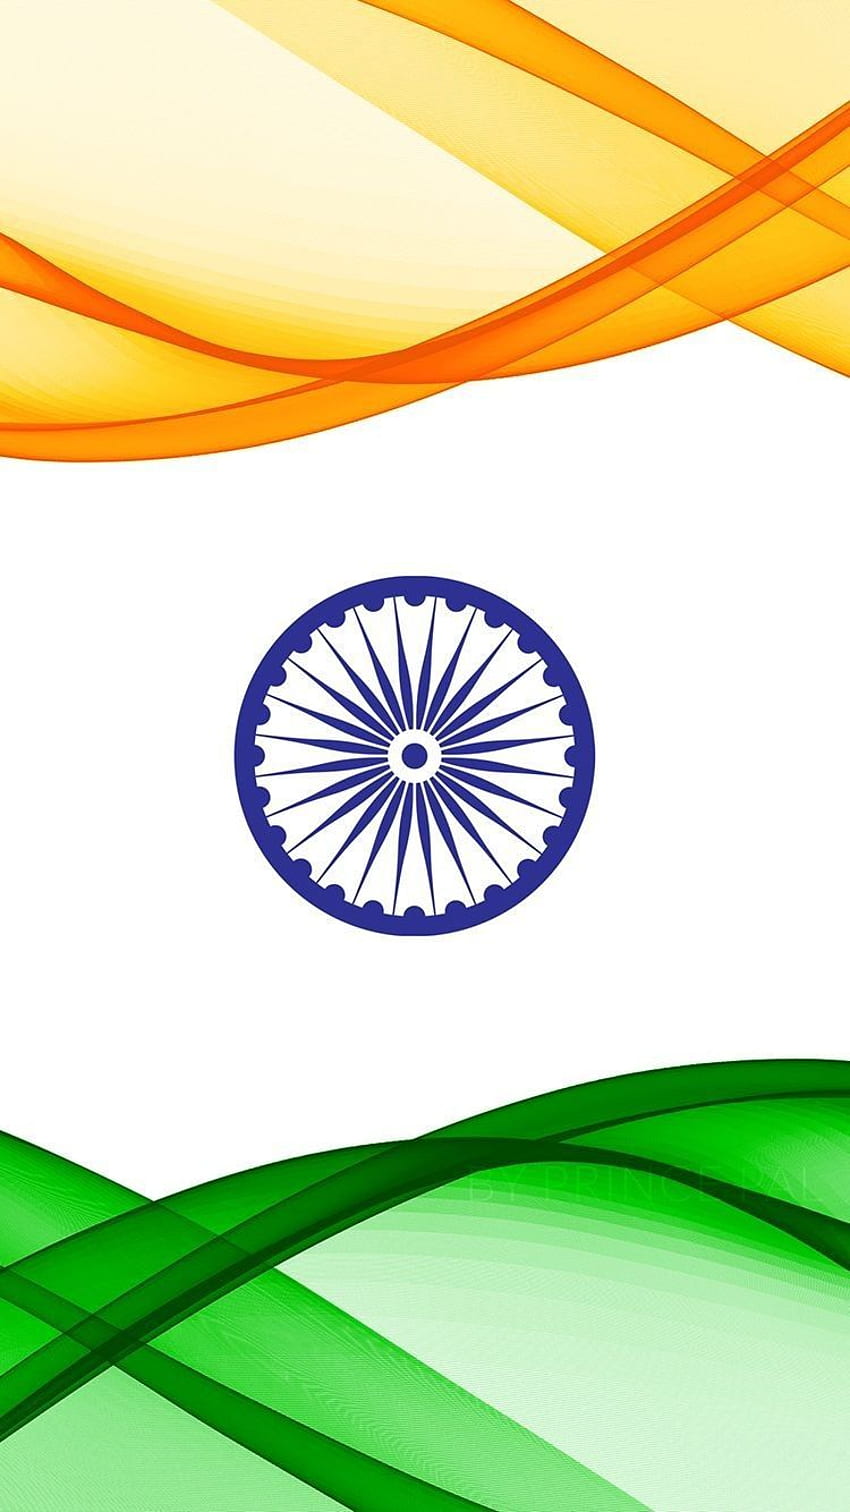 8 月 。 DP 8 月 15 日。 8月15日。 8月15日Gif。 8月15日の状況。 15金。 インドの旗 , インドの旗, インドの旗の色, 国旗 HD電話の壁紙